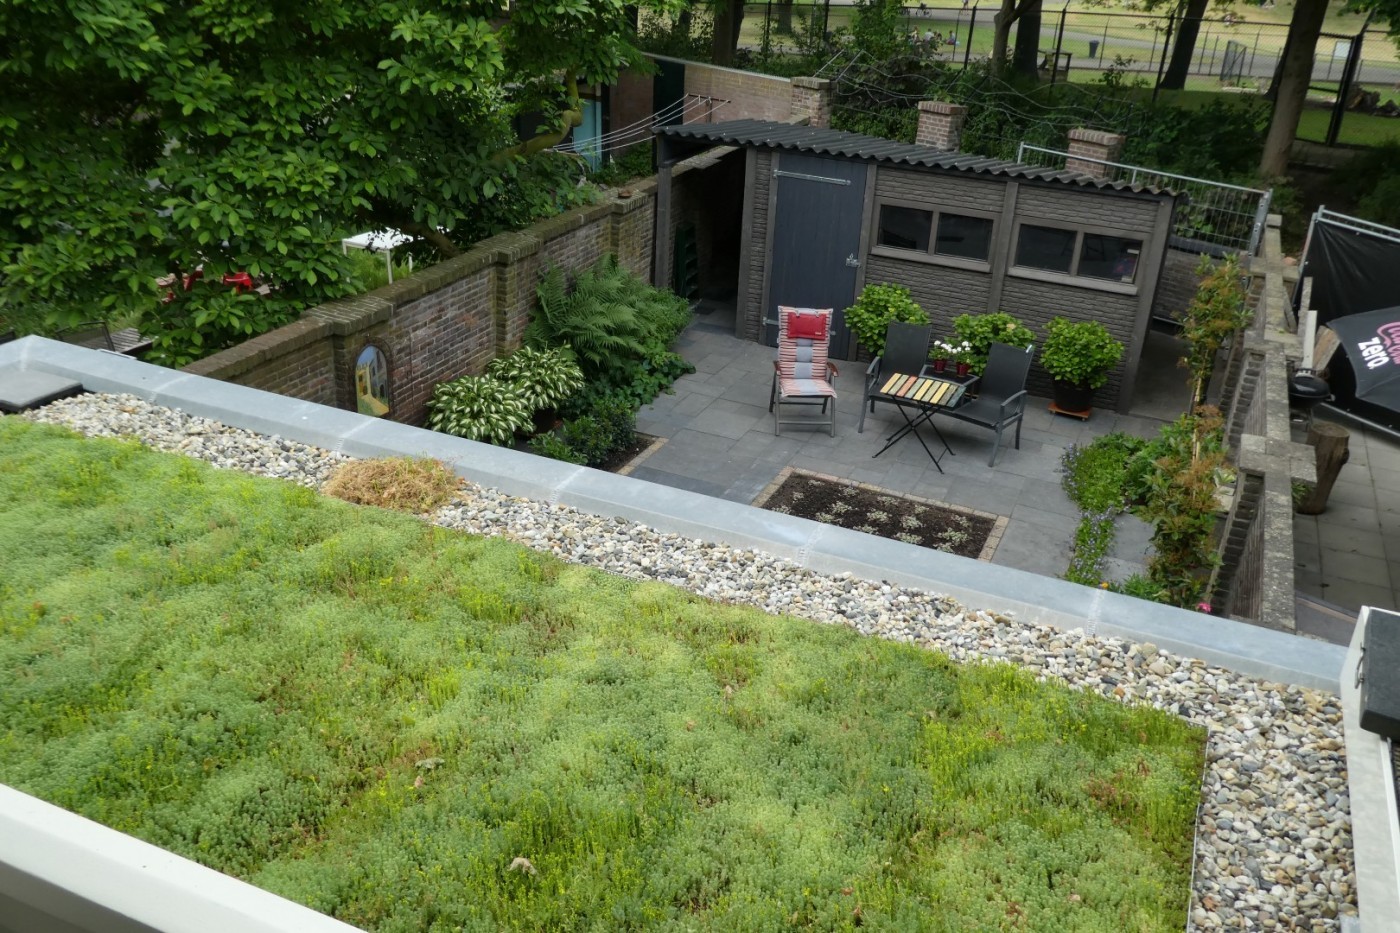 Het sedumdak en de achtertuin zorgen voor relatief veel groen in een stedelijke omgeving. 